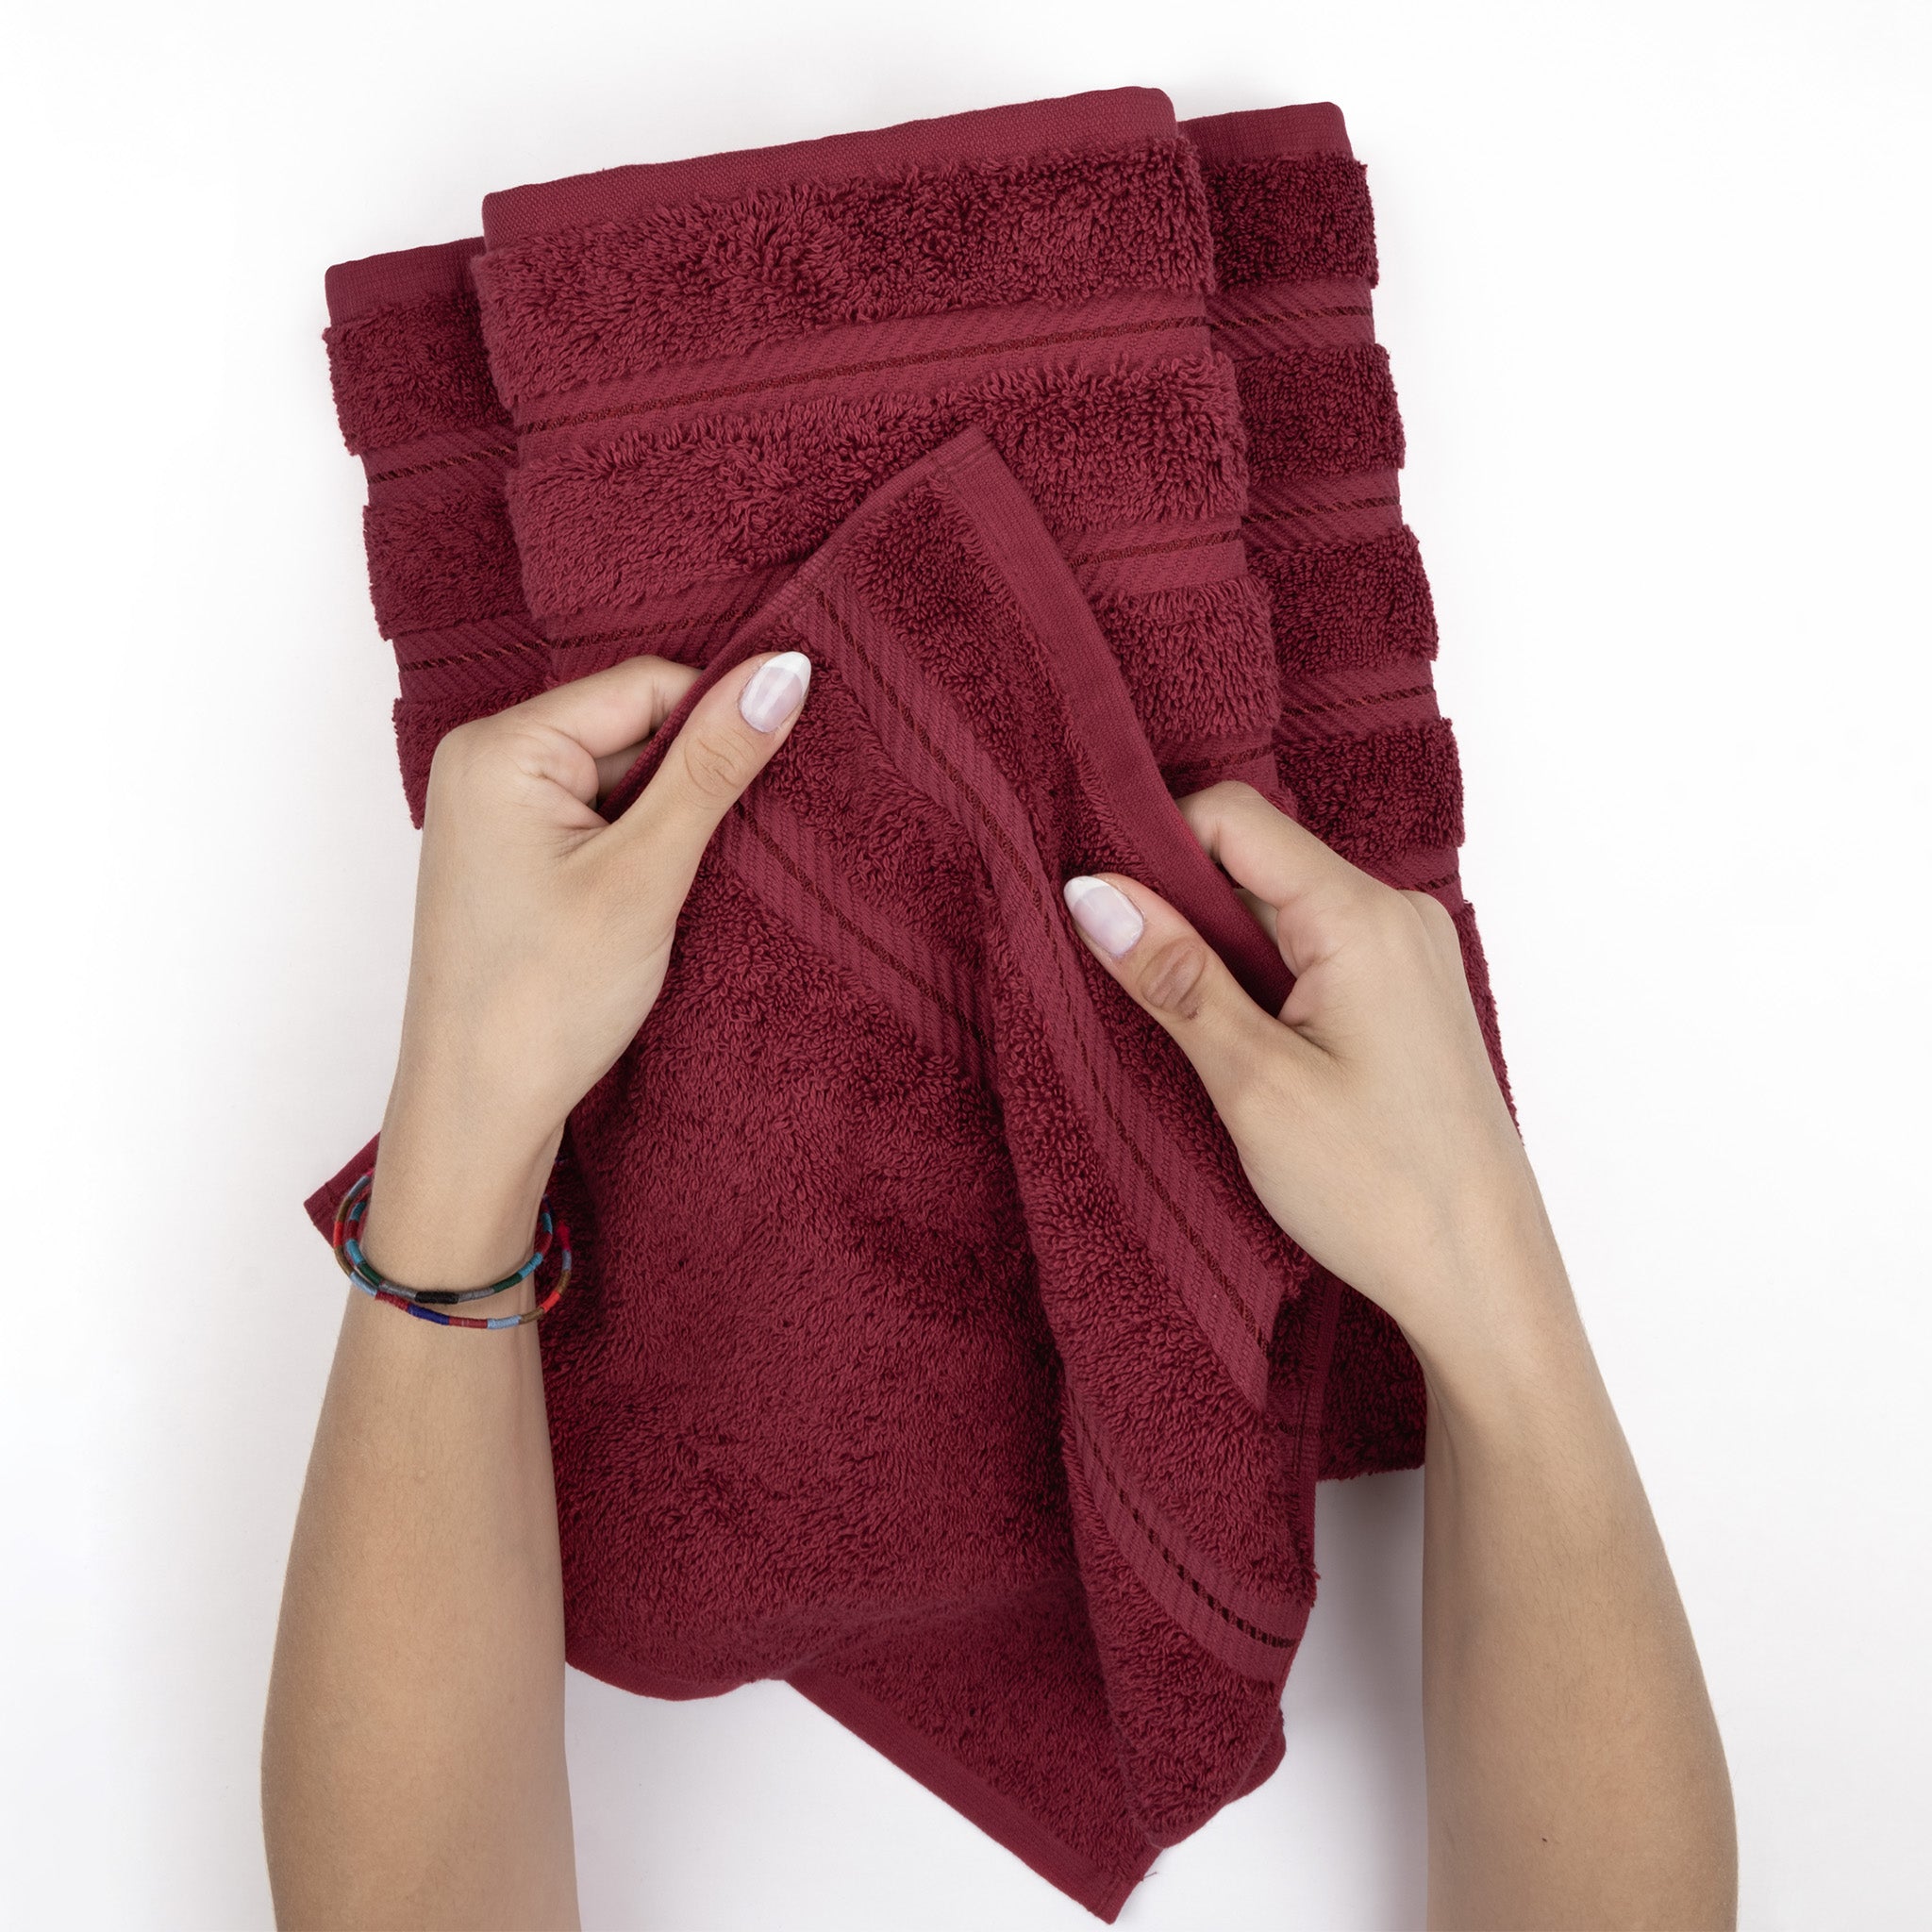 American Soft Linen 100% Turkish Cotton 4 Pack Hand Towel Set Wholesale bordeaux-red-5